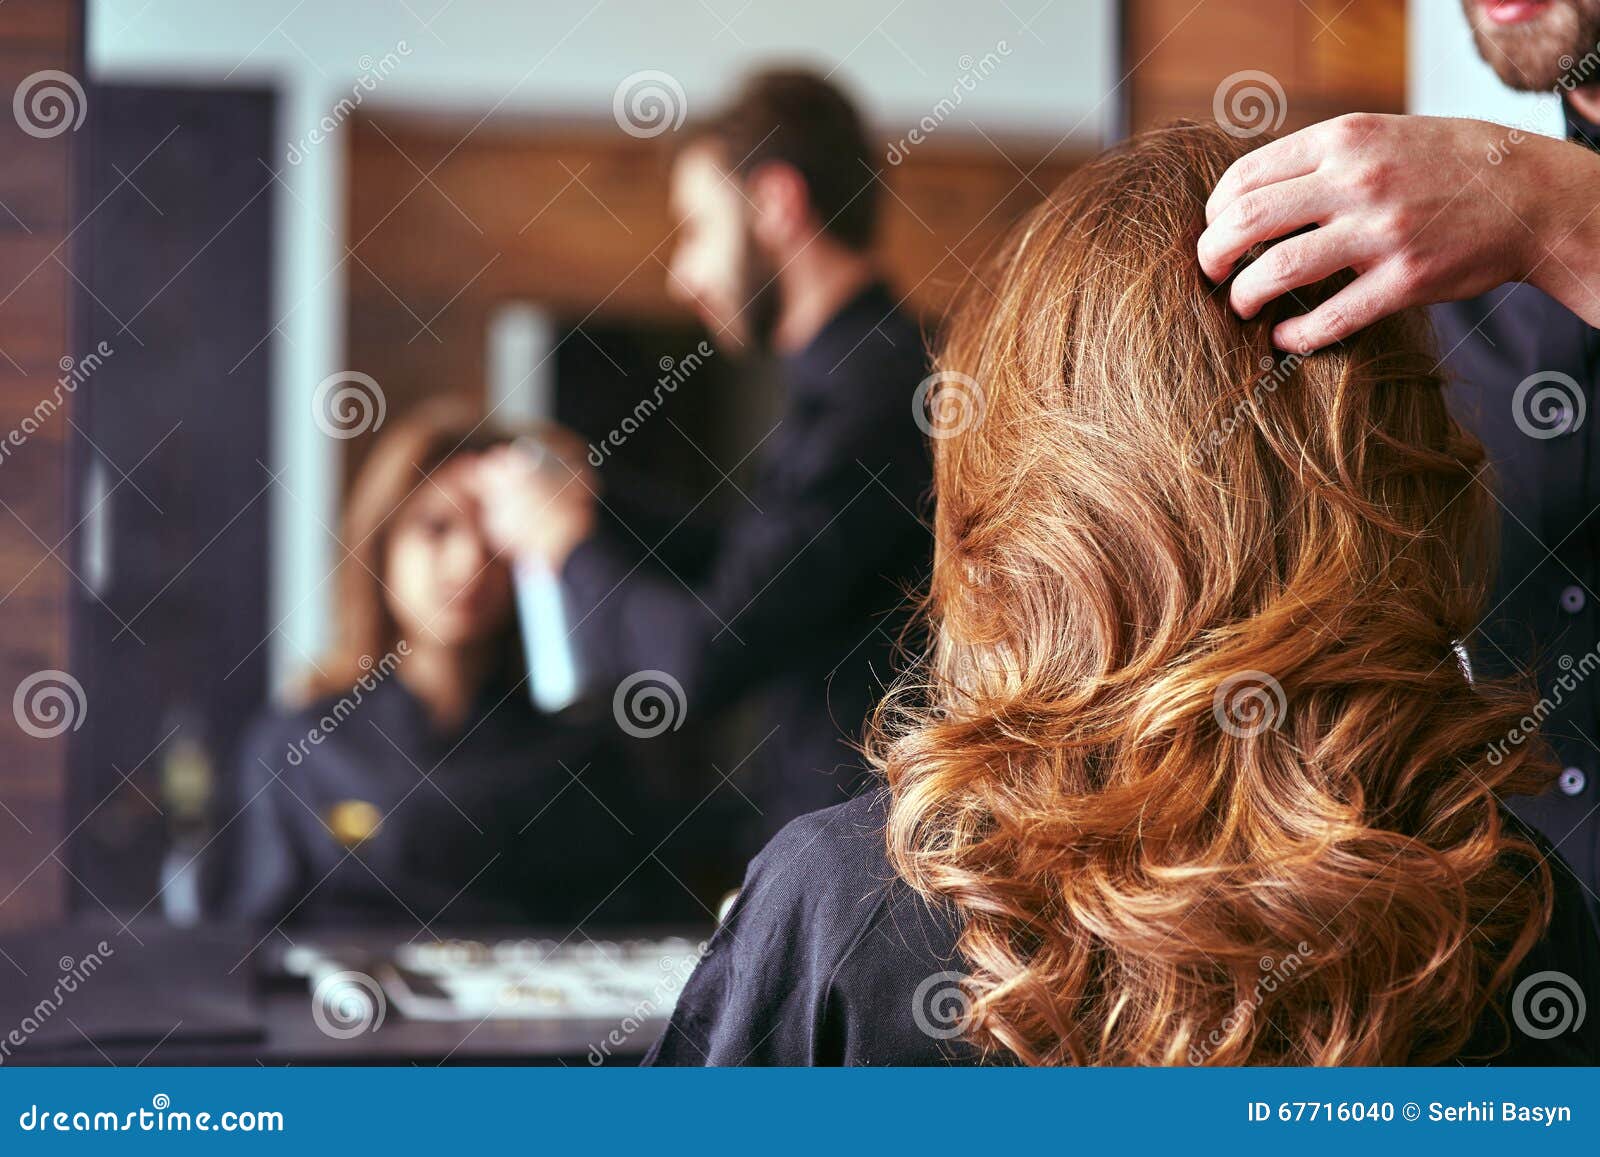 women's haircut. hairdresser, beauty salon